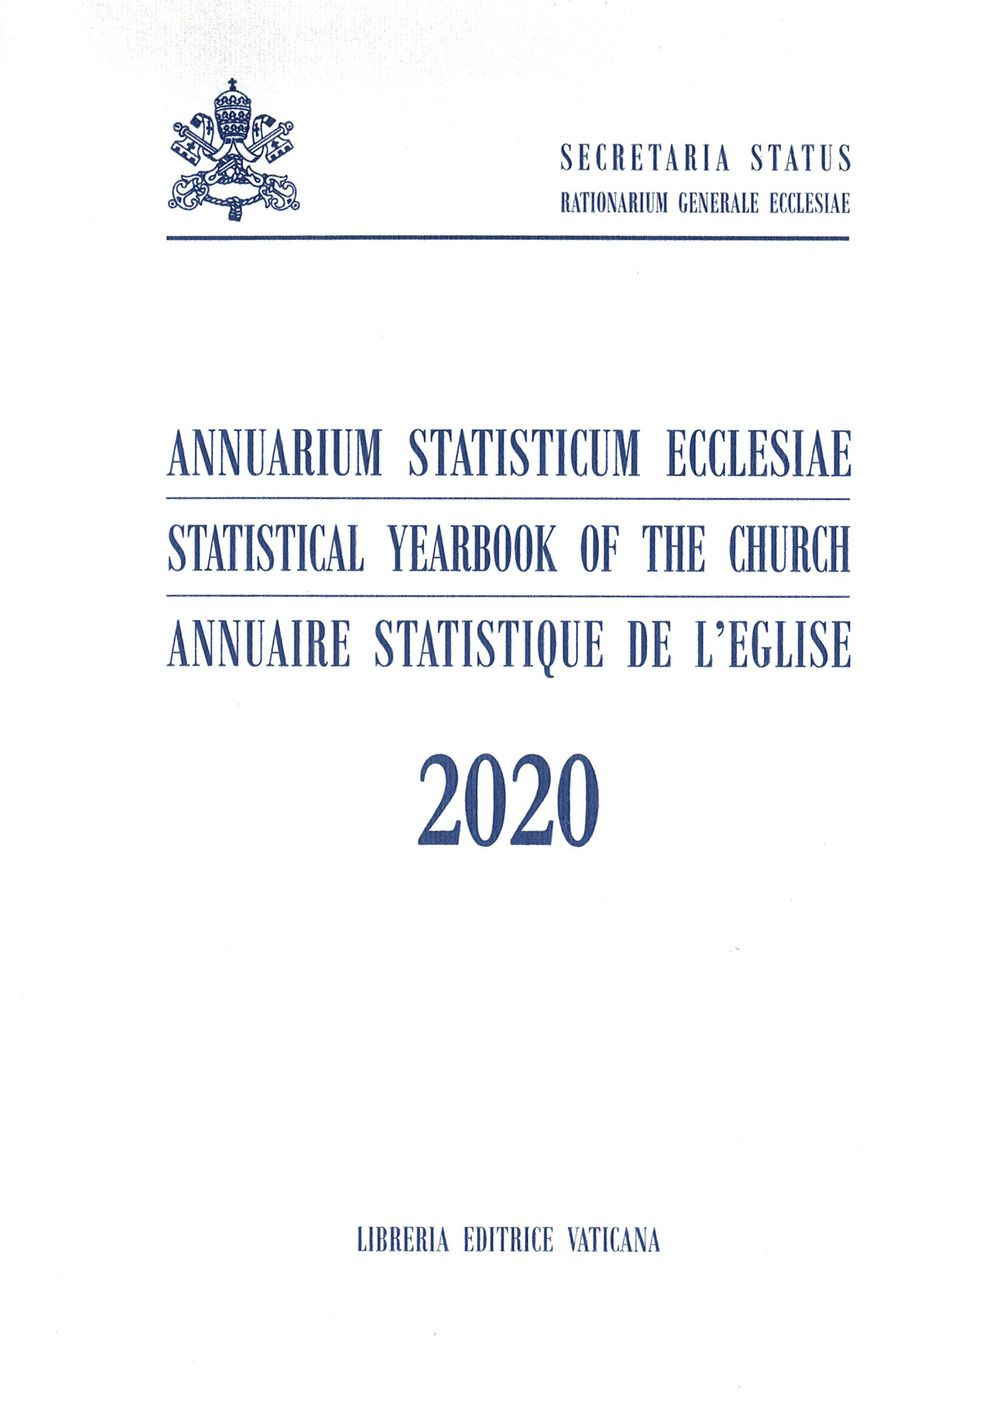 Image of Annuarium statisticum Ecclesiae (2020)